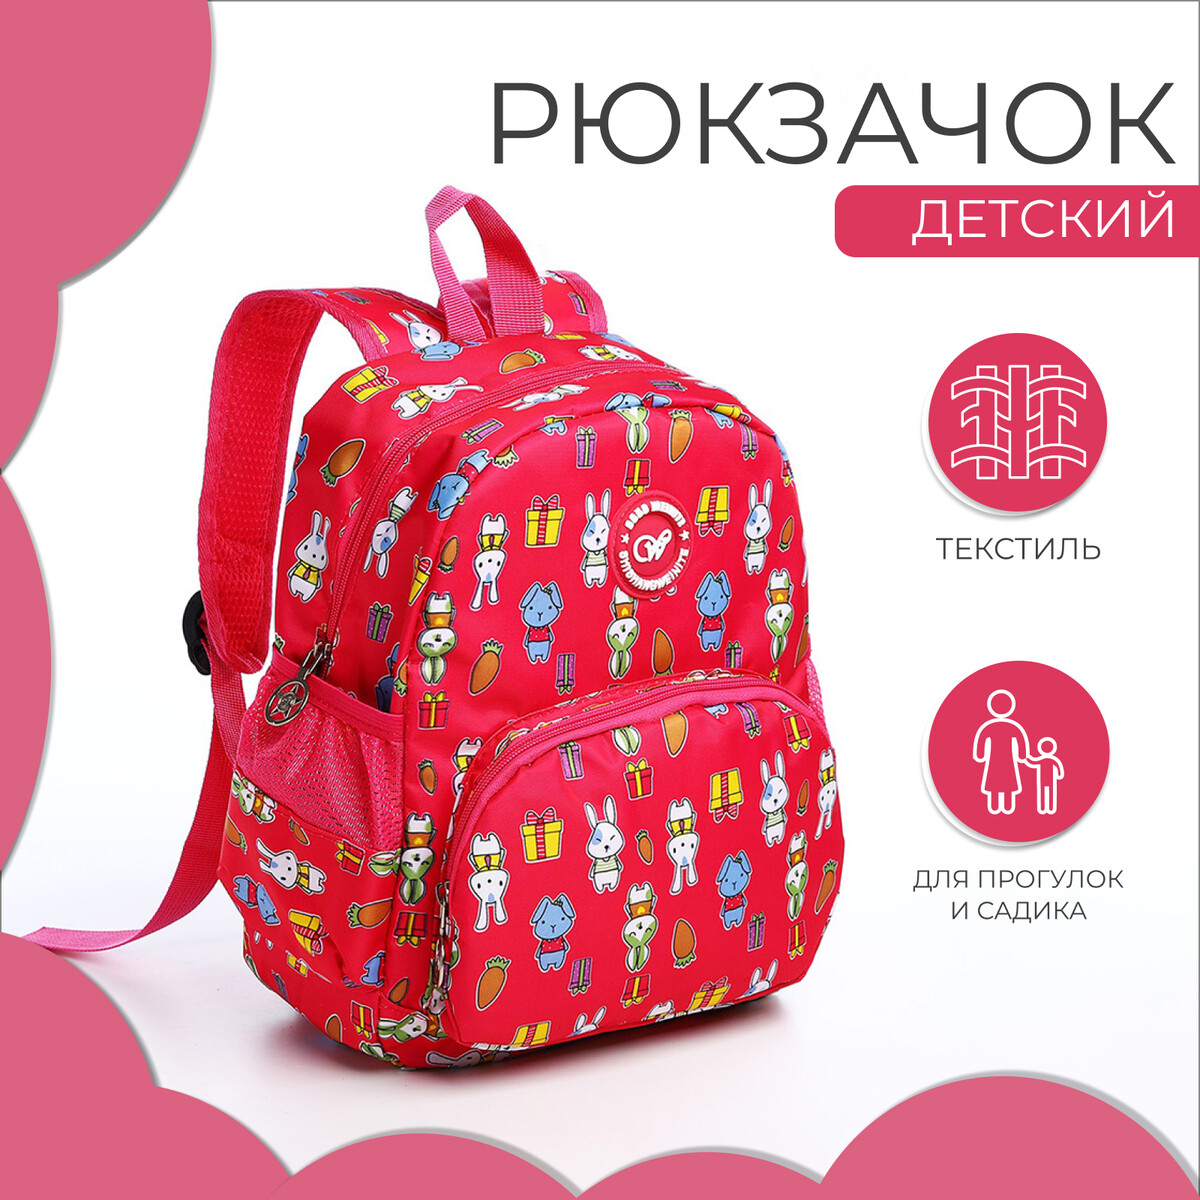 Рюкзак детский на молнии, наружный карман, цвет малиновый детский рюкзак зфтс на молнии наружный карман розовый